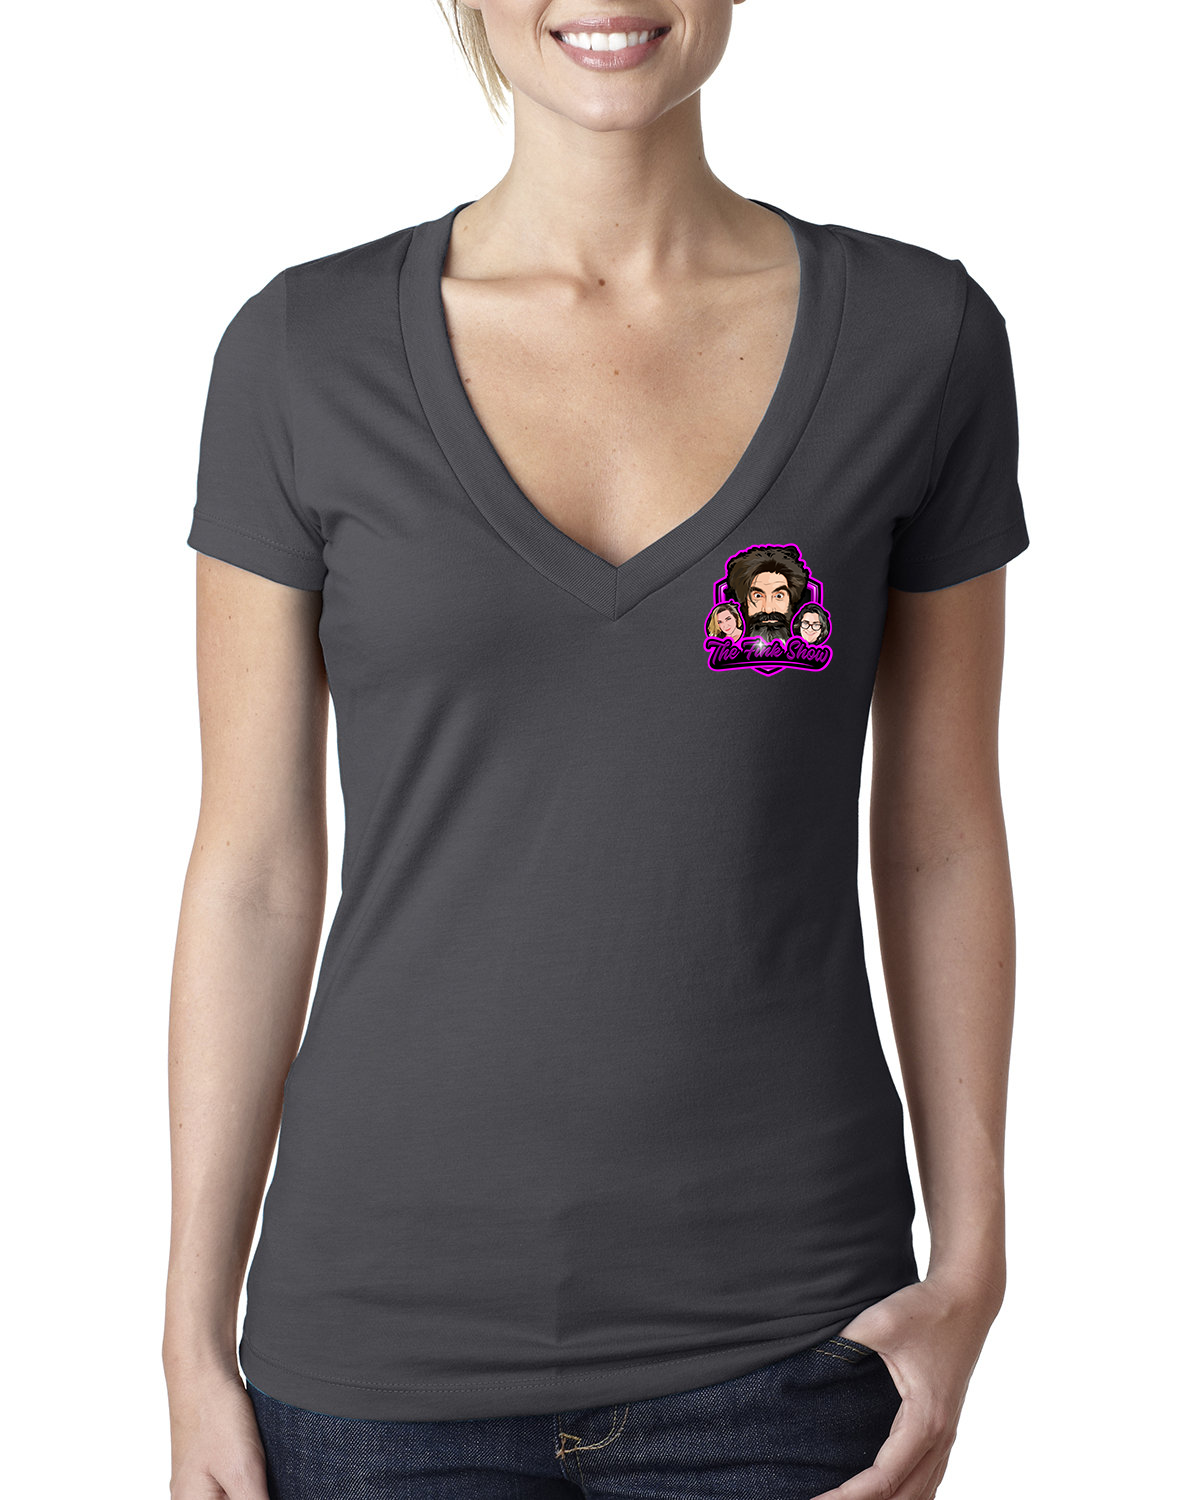 Fink Show Ladies Deep V-Neck T-shirt Pocket Sized V2.0 Logo